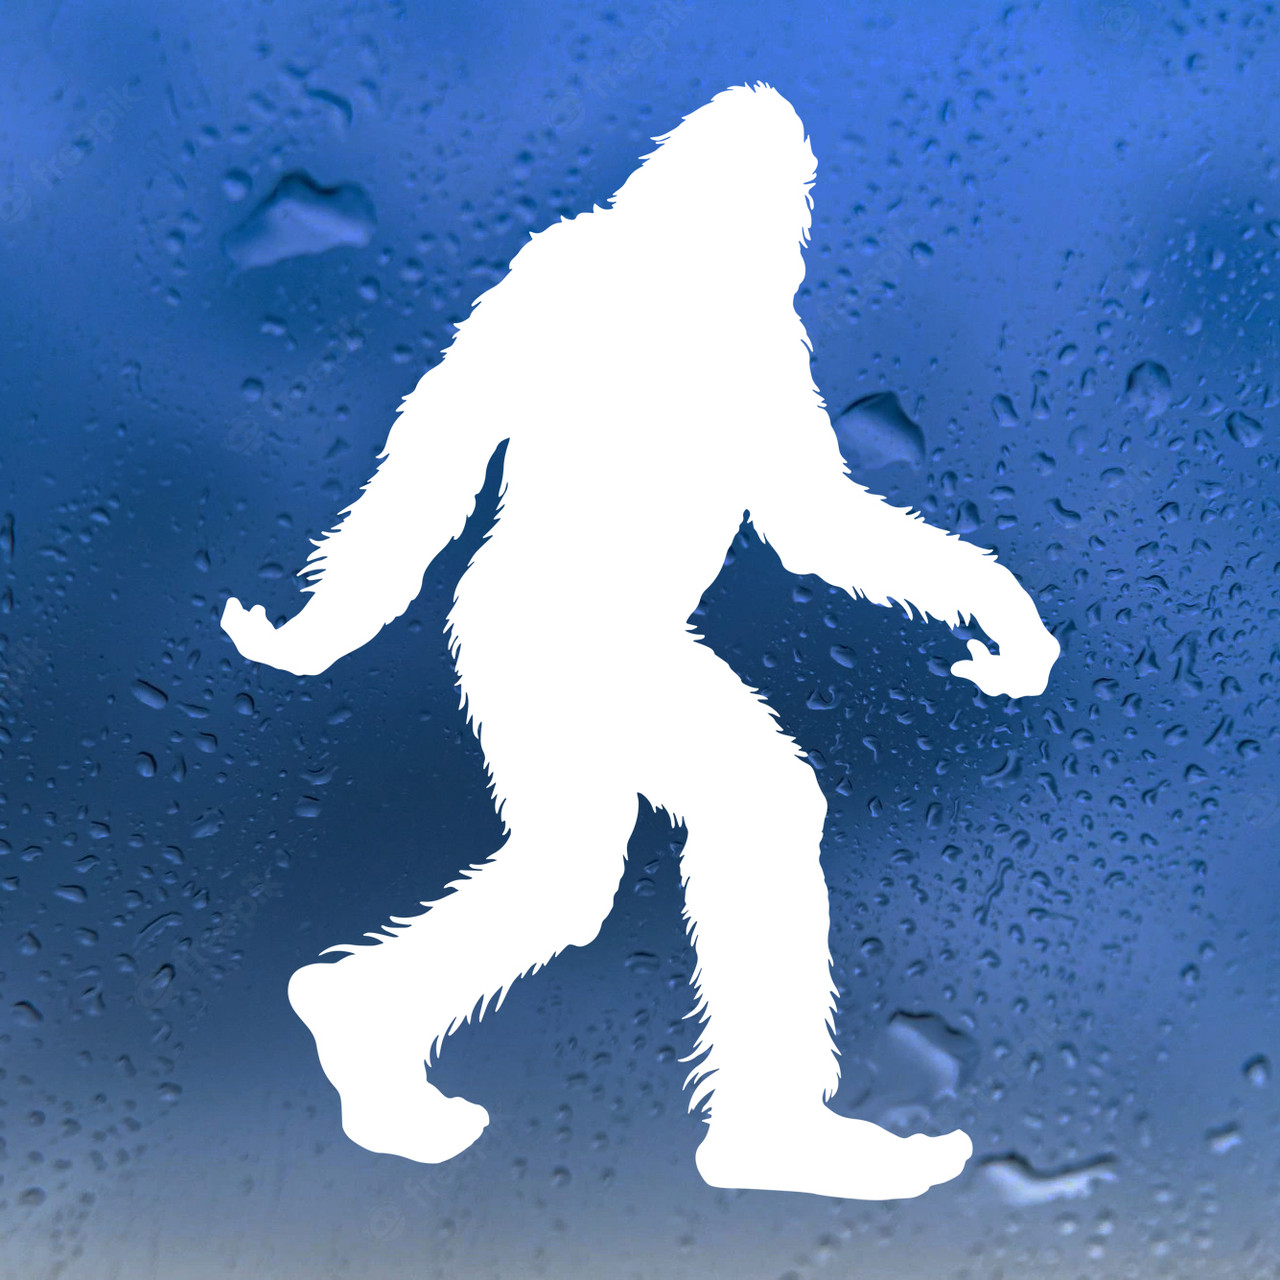 Bigfoot Vinyl Decal V3 - Yeti Abonimable Snowman PNW Sasquatch Believe - Die Cut Sticker